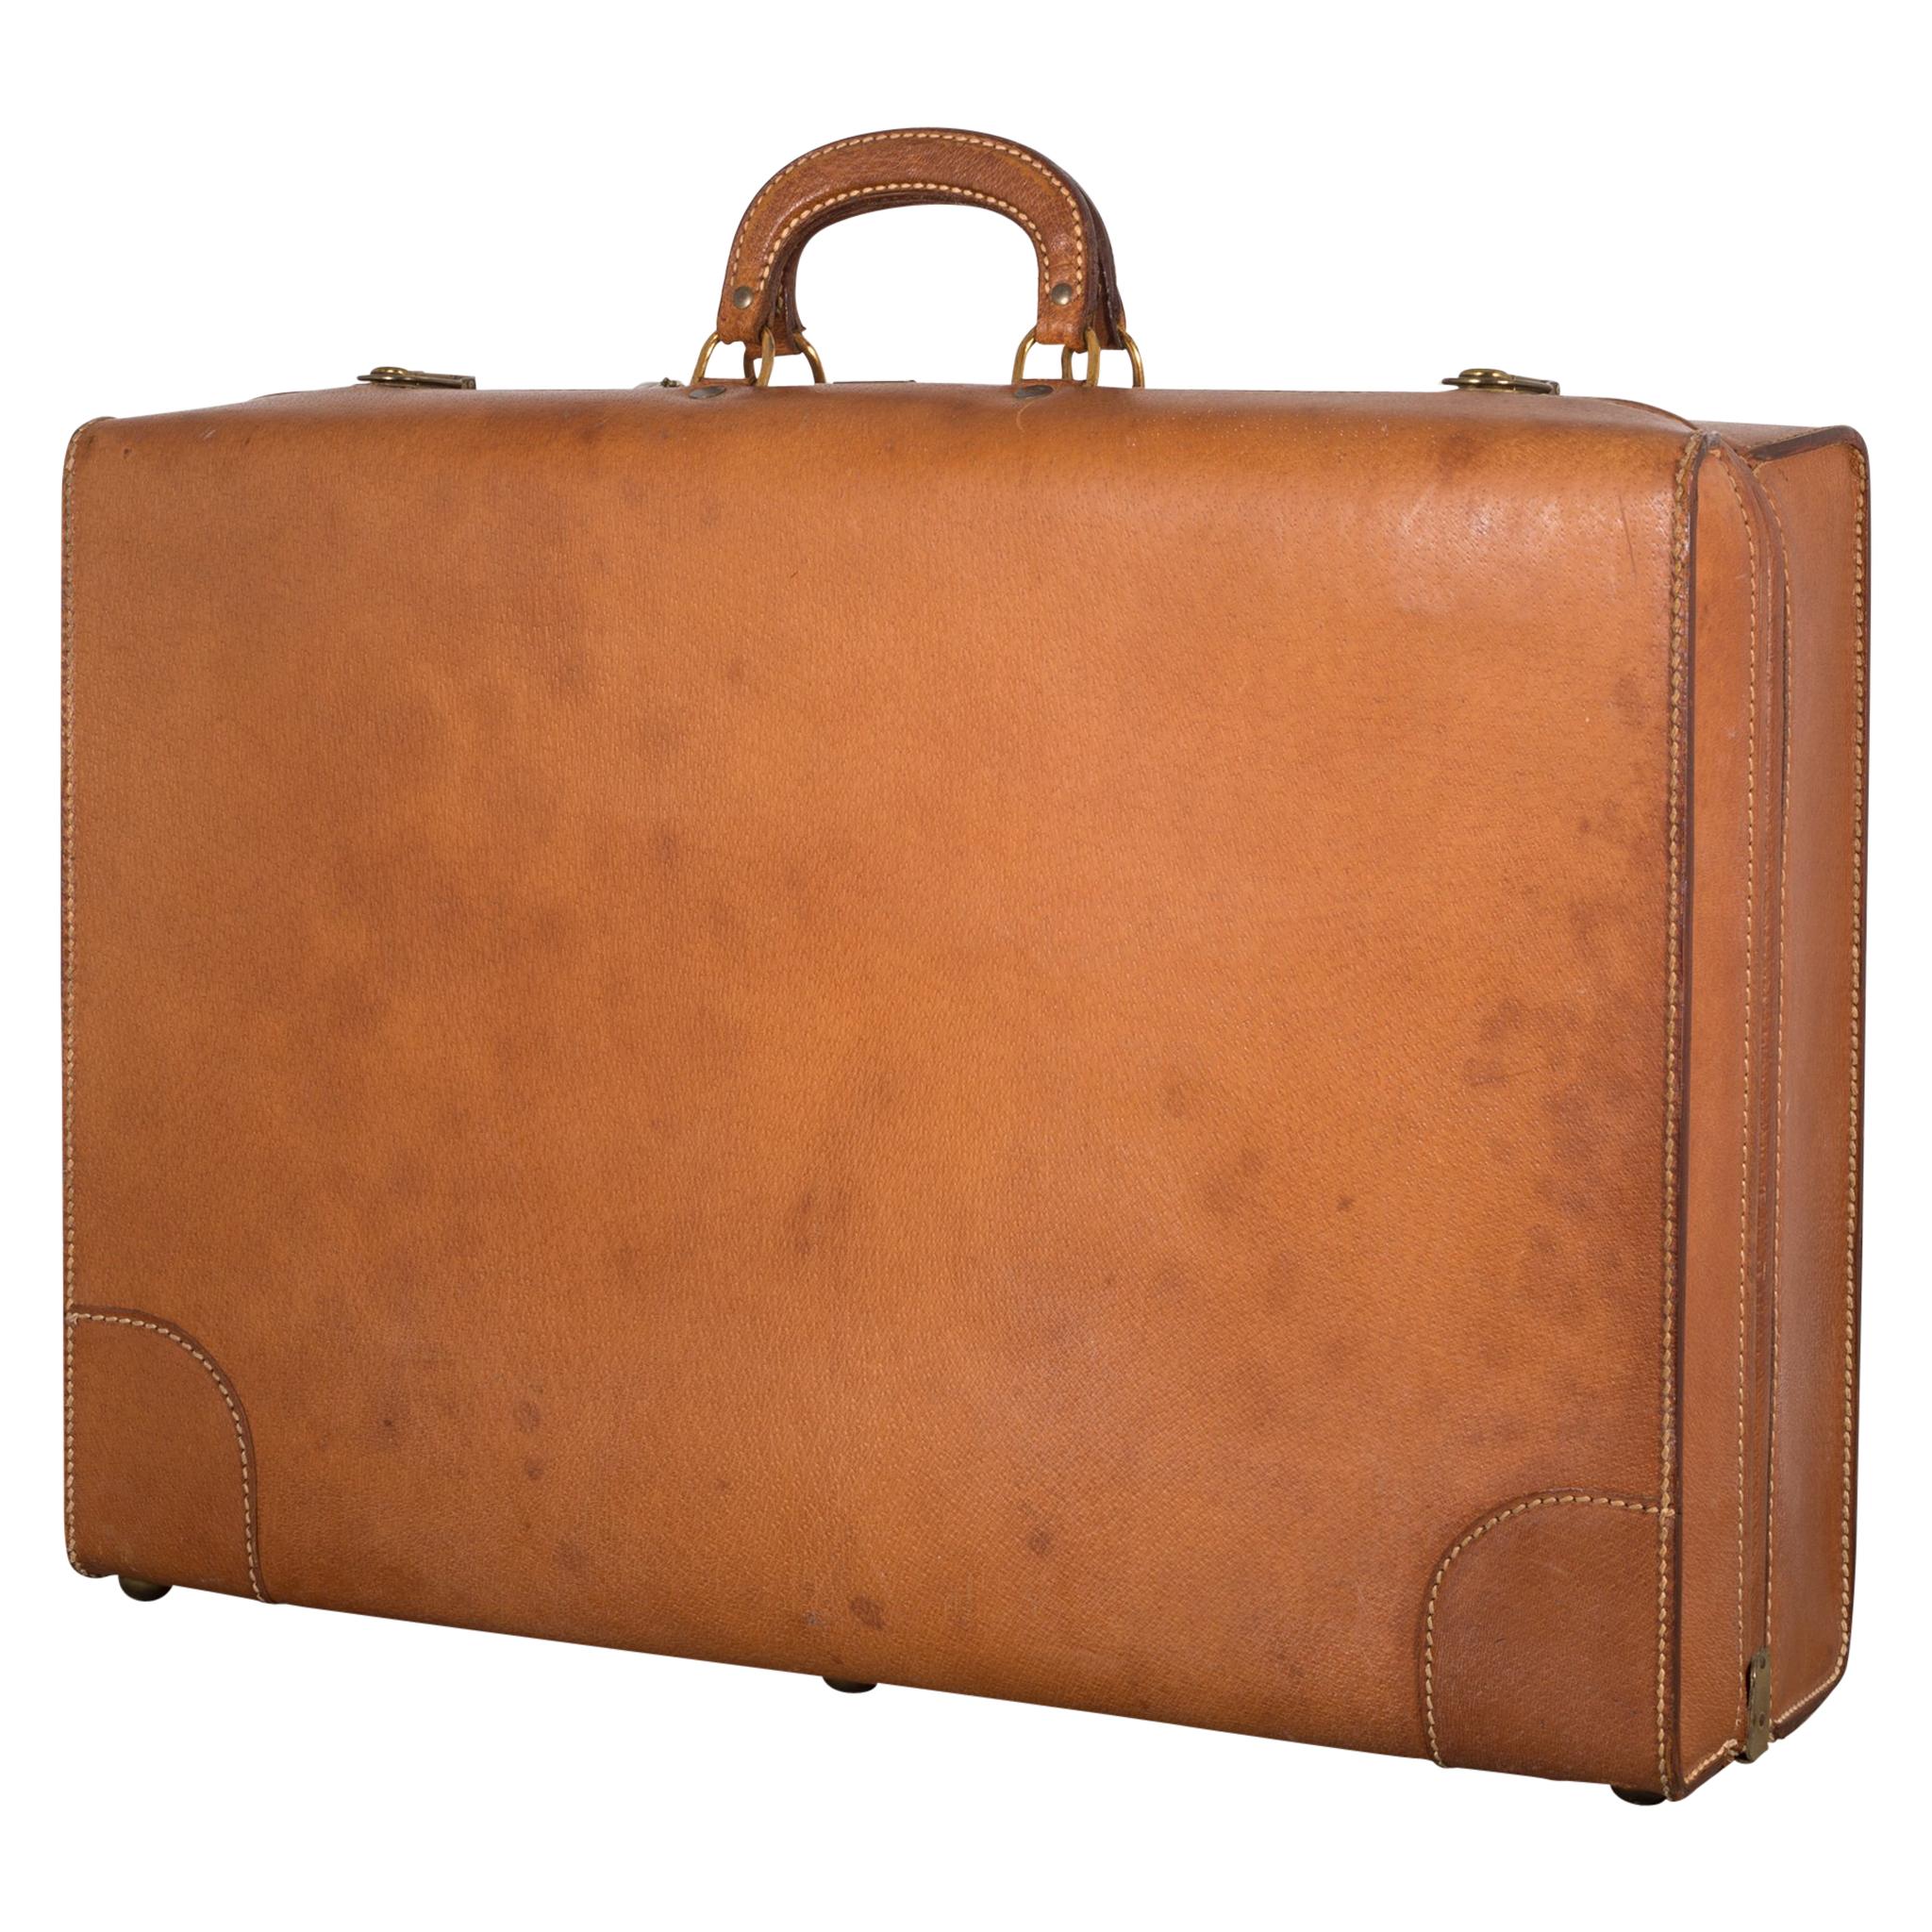 Pigskin Luggage by Boyle, circa 1940